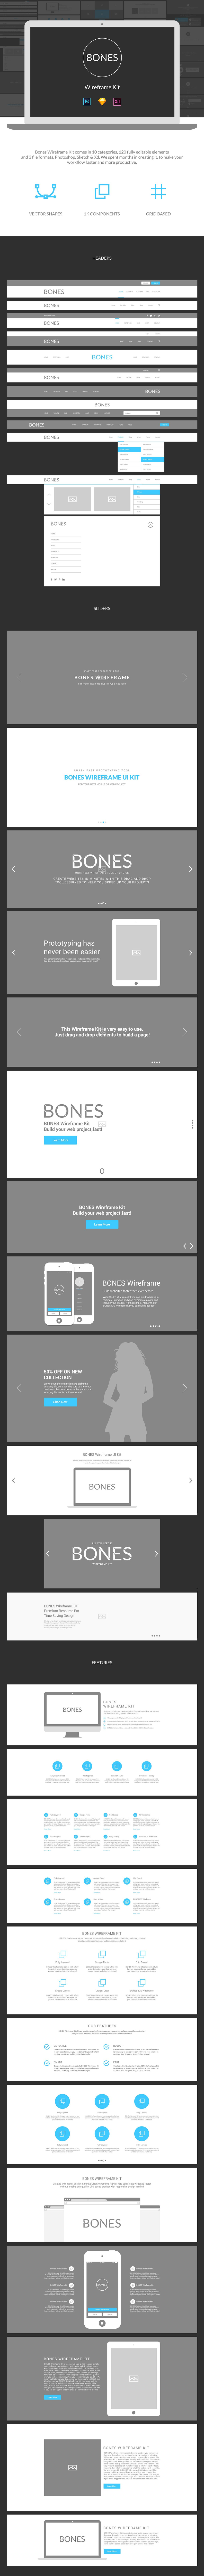 网页设计线稿图 Bones Wireframe Kit插图6